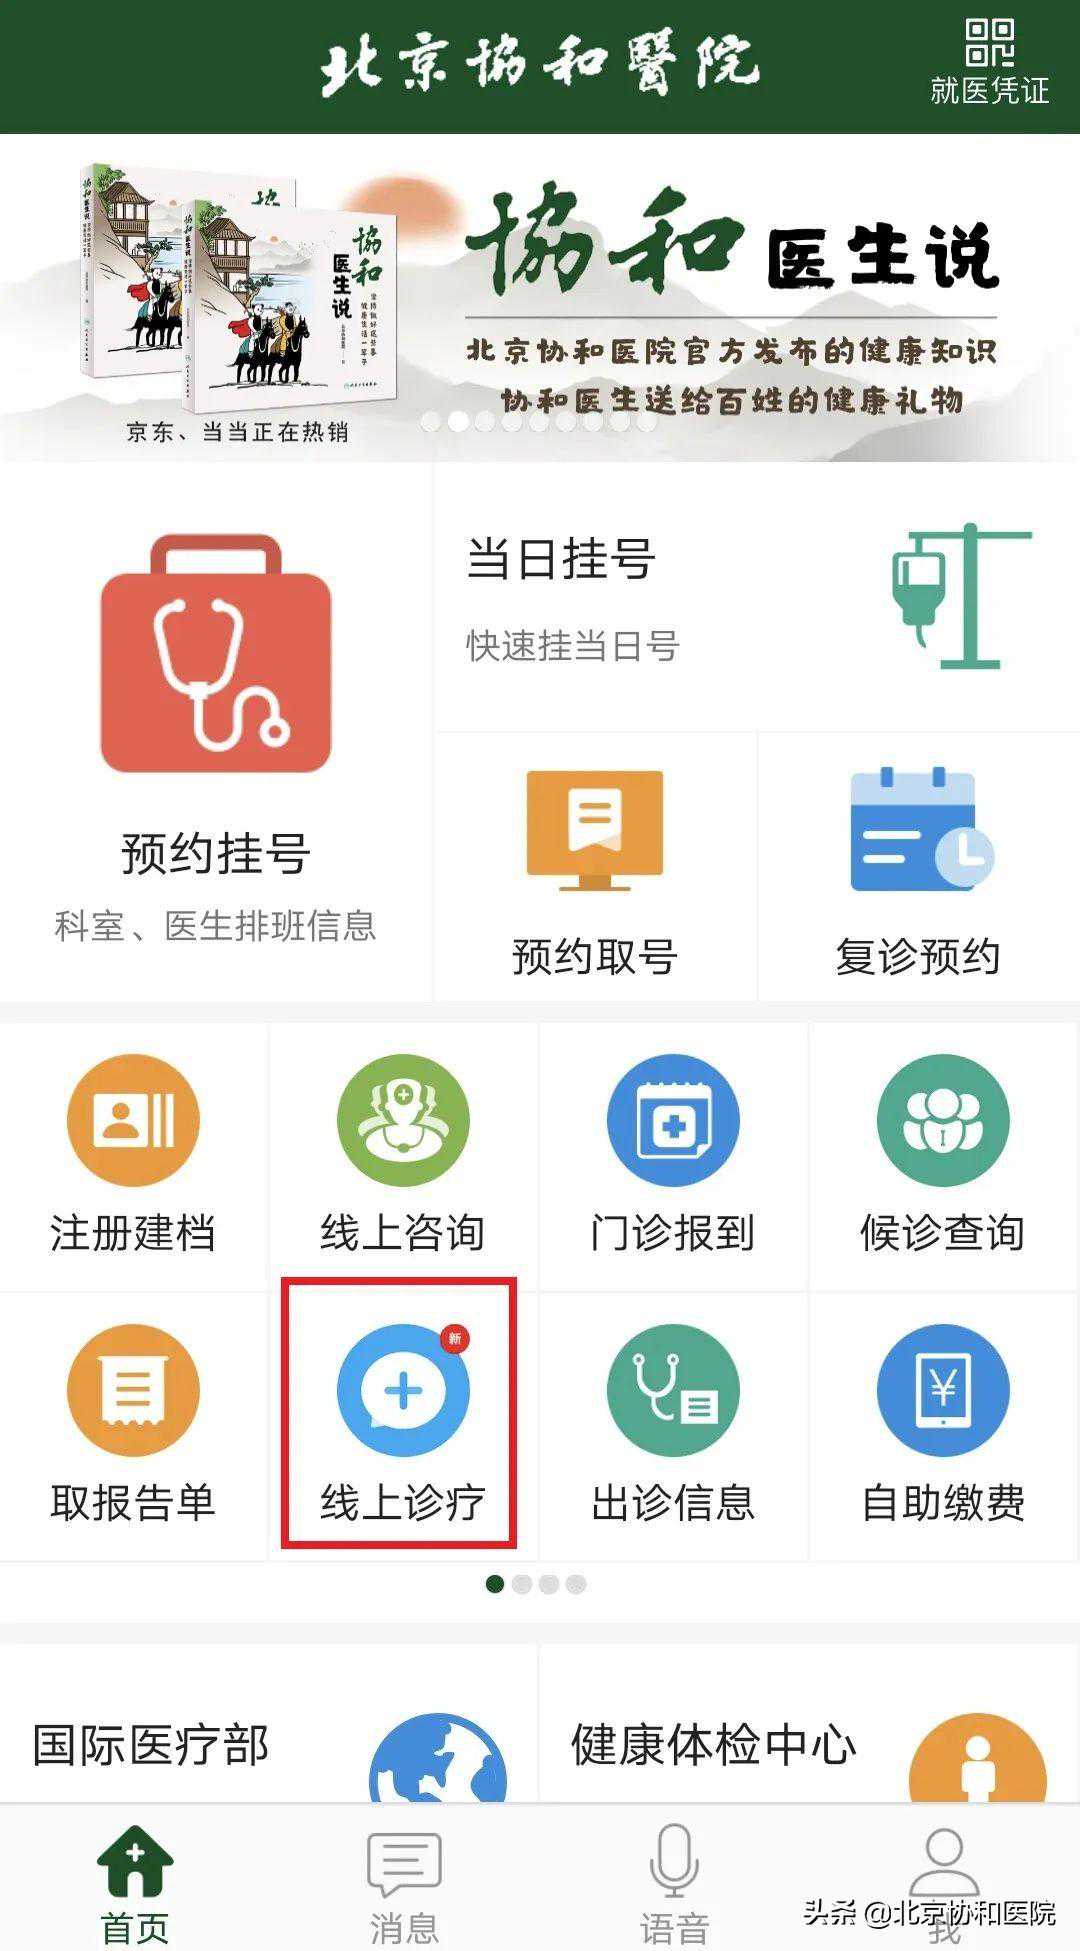 湖北代生客服电话,患者须知 - 请您查收北京协和医院互联网诊疗就诊攻略2.0